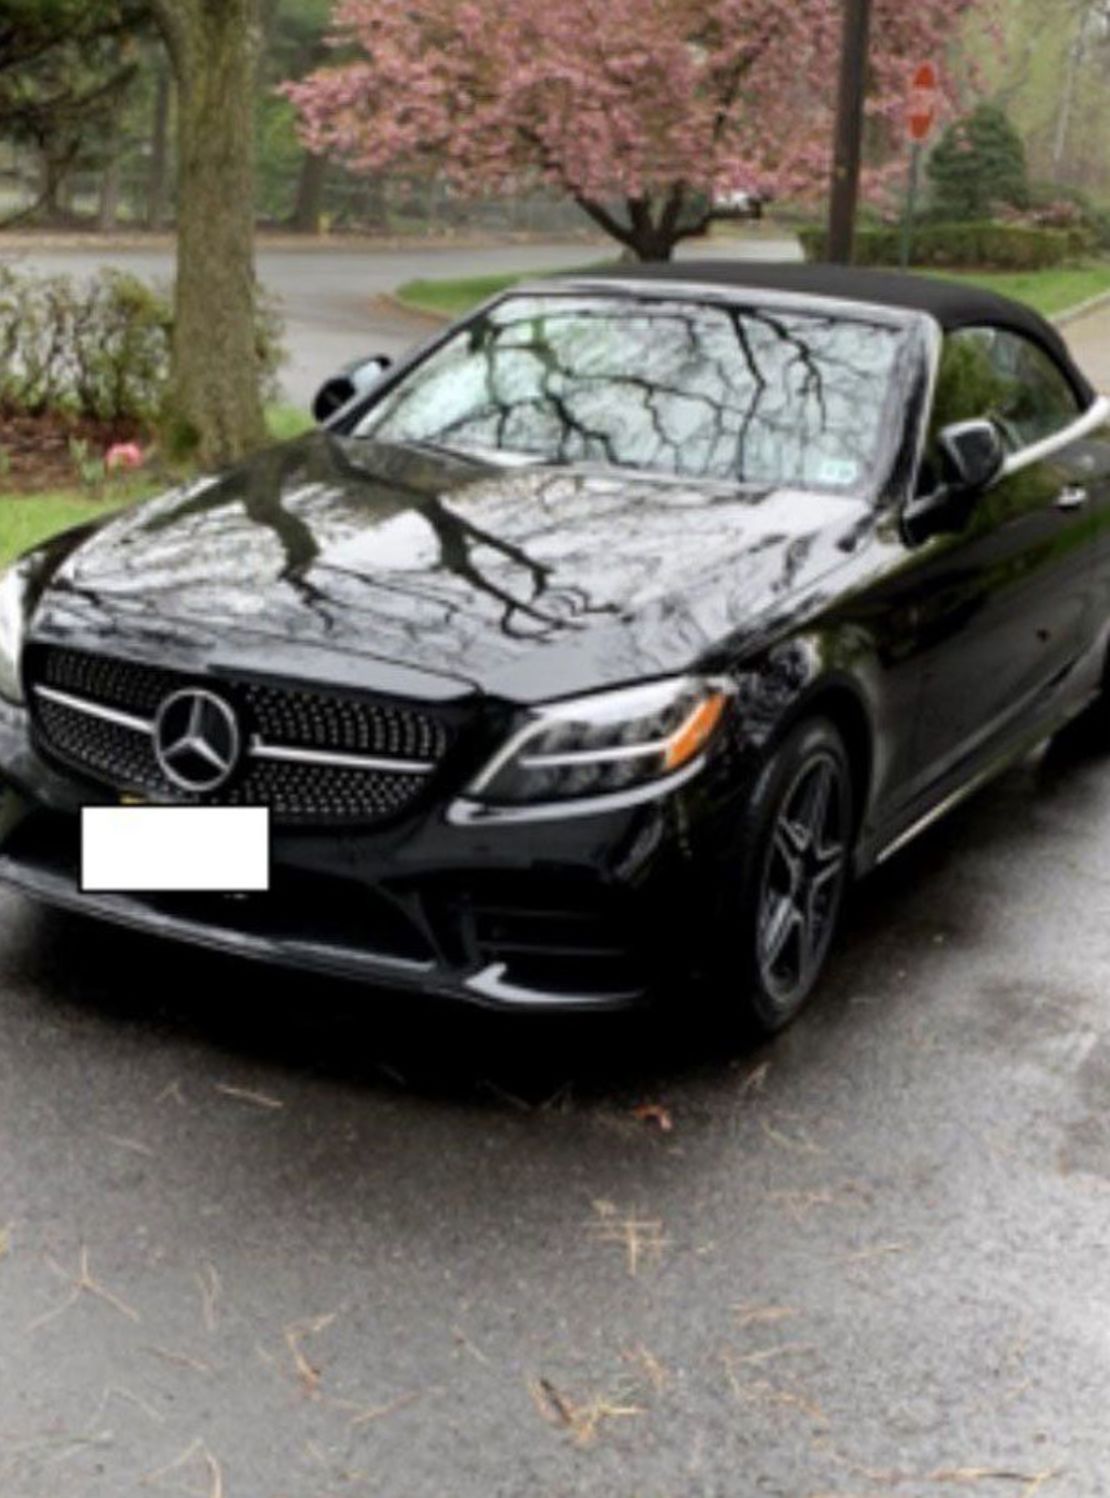 Nadine Menendez bleu Mercedes-Benz C-class kabrio me një pagesë prej 15,000 dollarë një ditë pasi prokurorët thanë se asaj iu dha 15,000 dollarë në një parking nga Uribe. Ata e kanë përfshirë këtë foto në dokumentet e gjykatës.